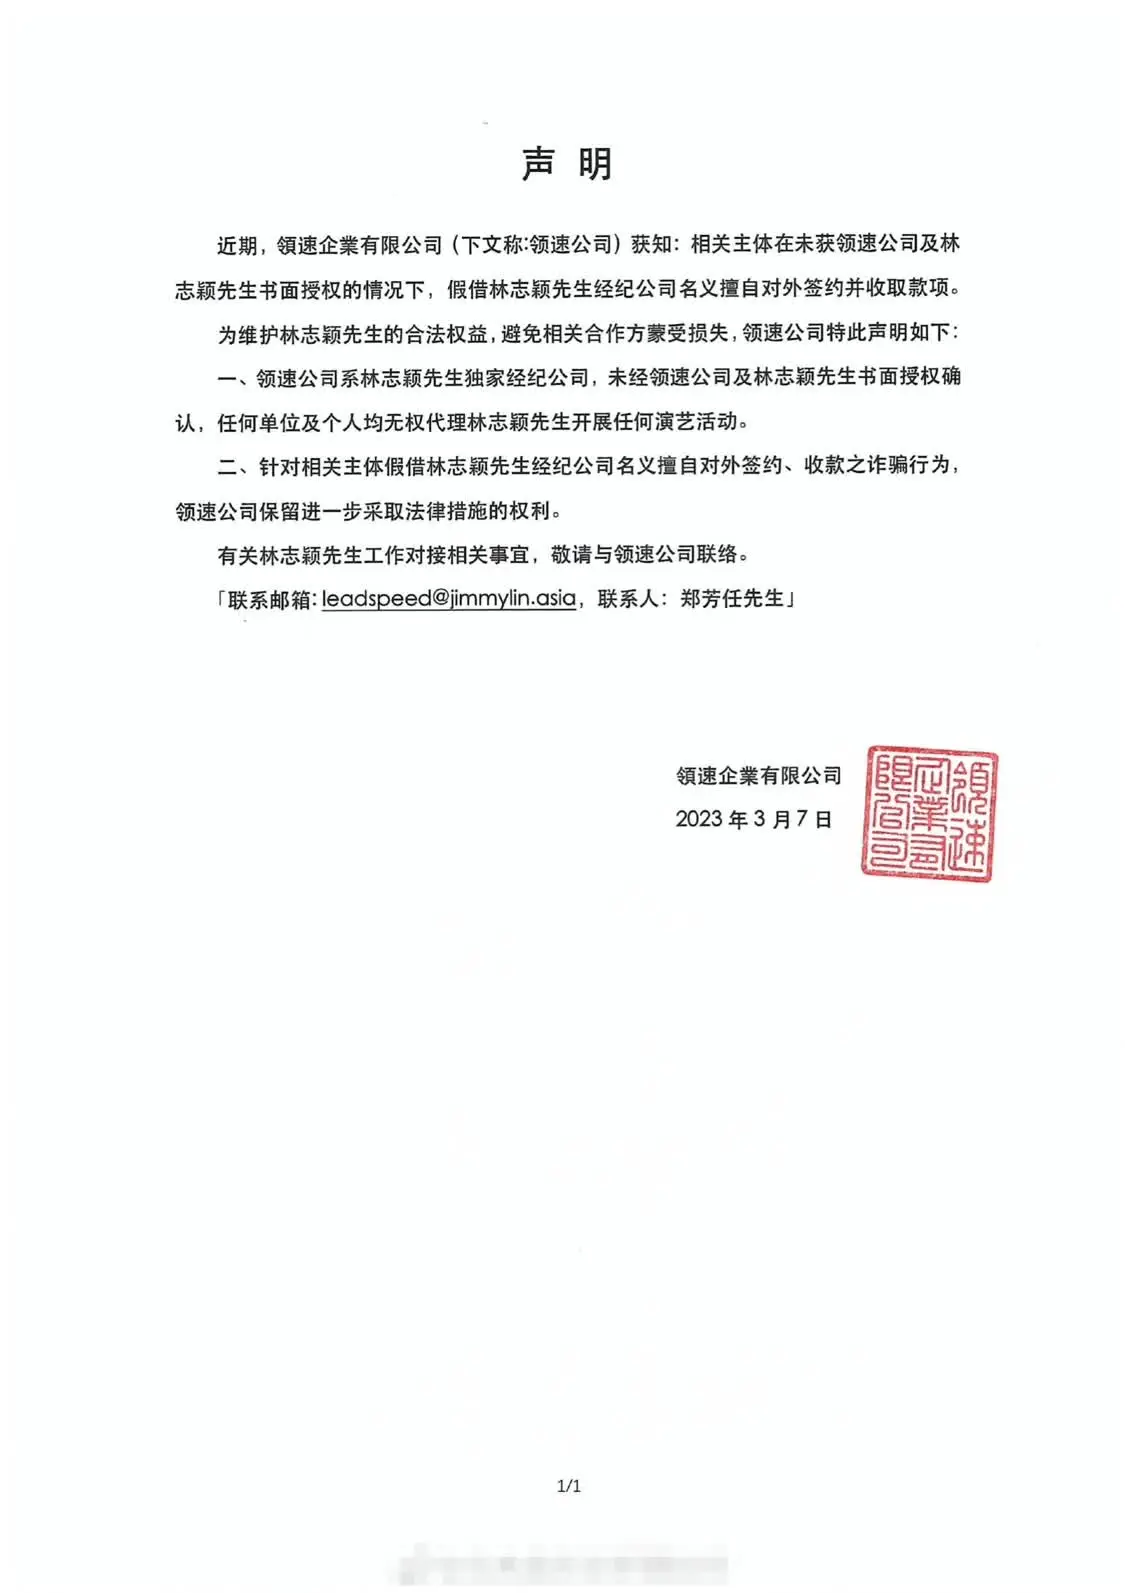 林志颖方发律师声明 被假借名义签约并收取款项